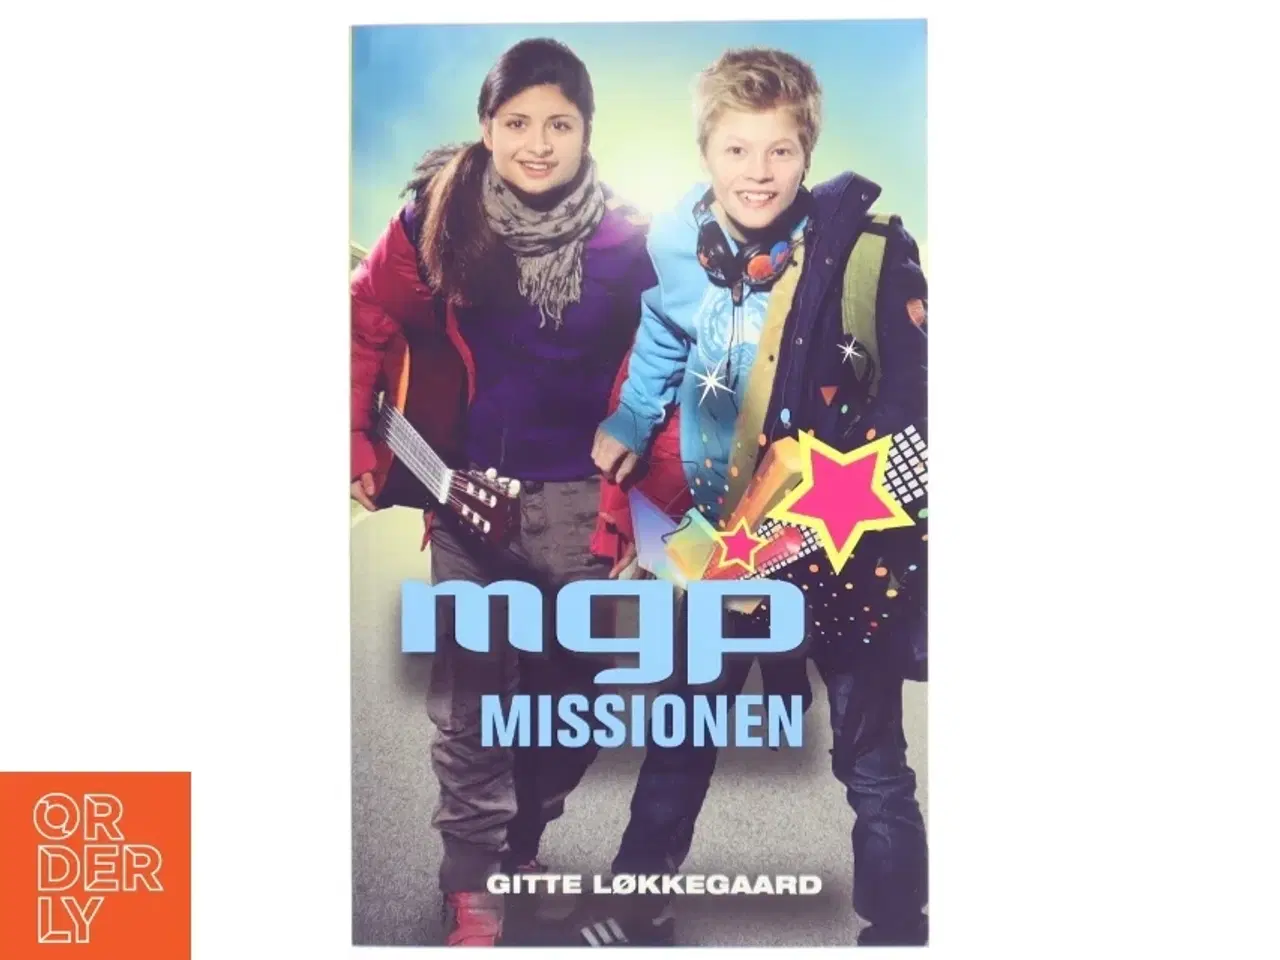 Billede 1 - 'MGP Missionen' af Gitte Løkkegaard (bog) fra Politikens Forlag